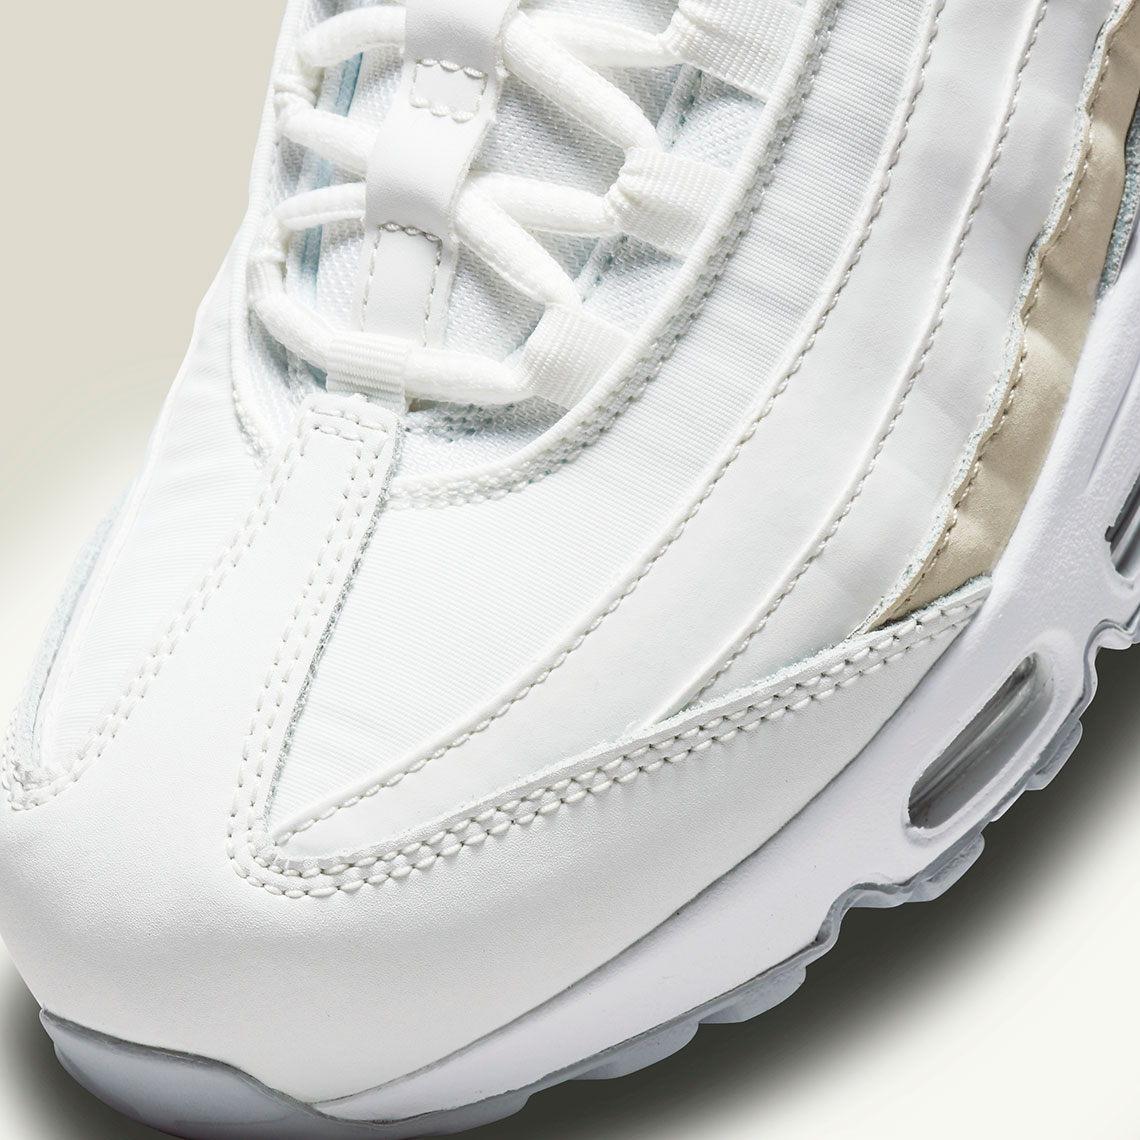 Nike Air Max 95 WMNS White Beige DA8731-100 | SneakerNews.com